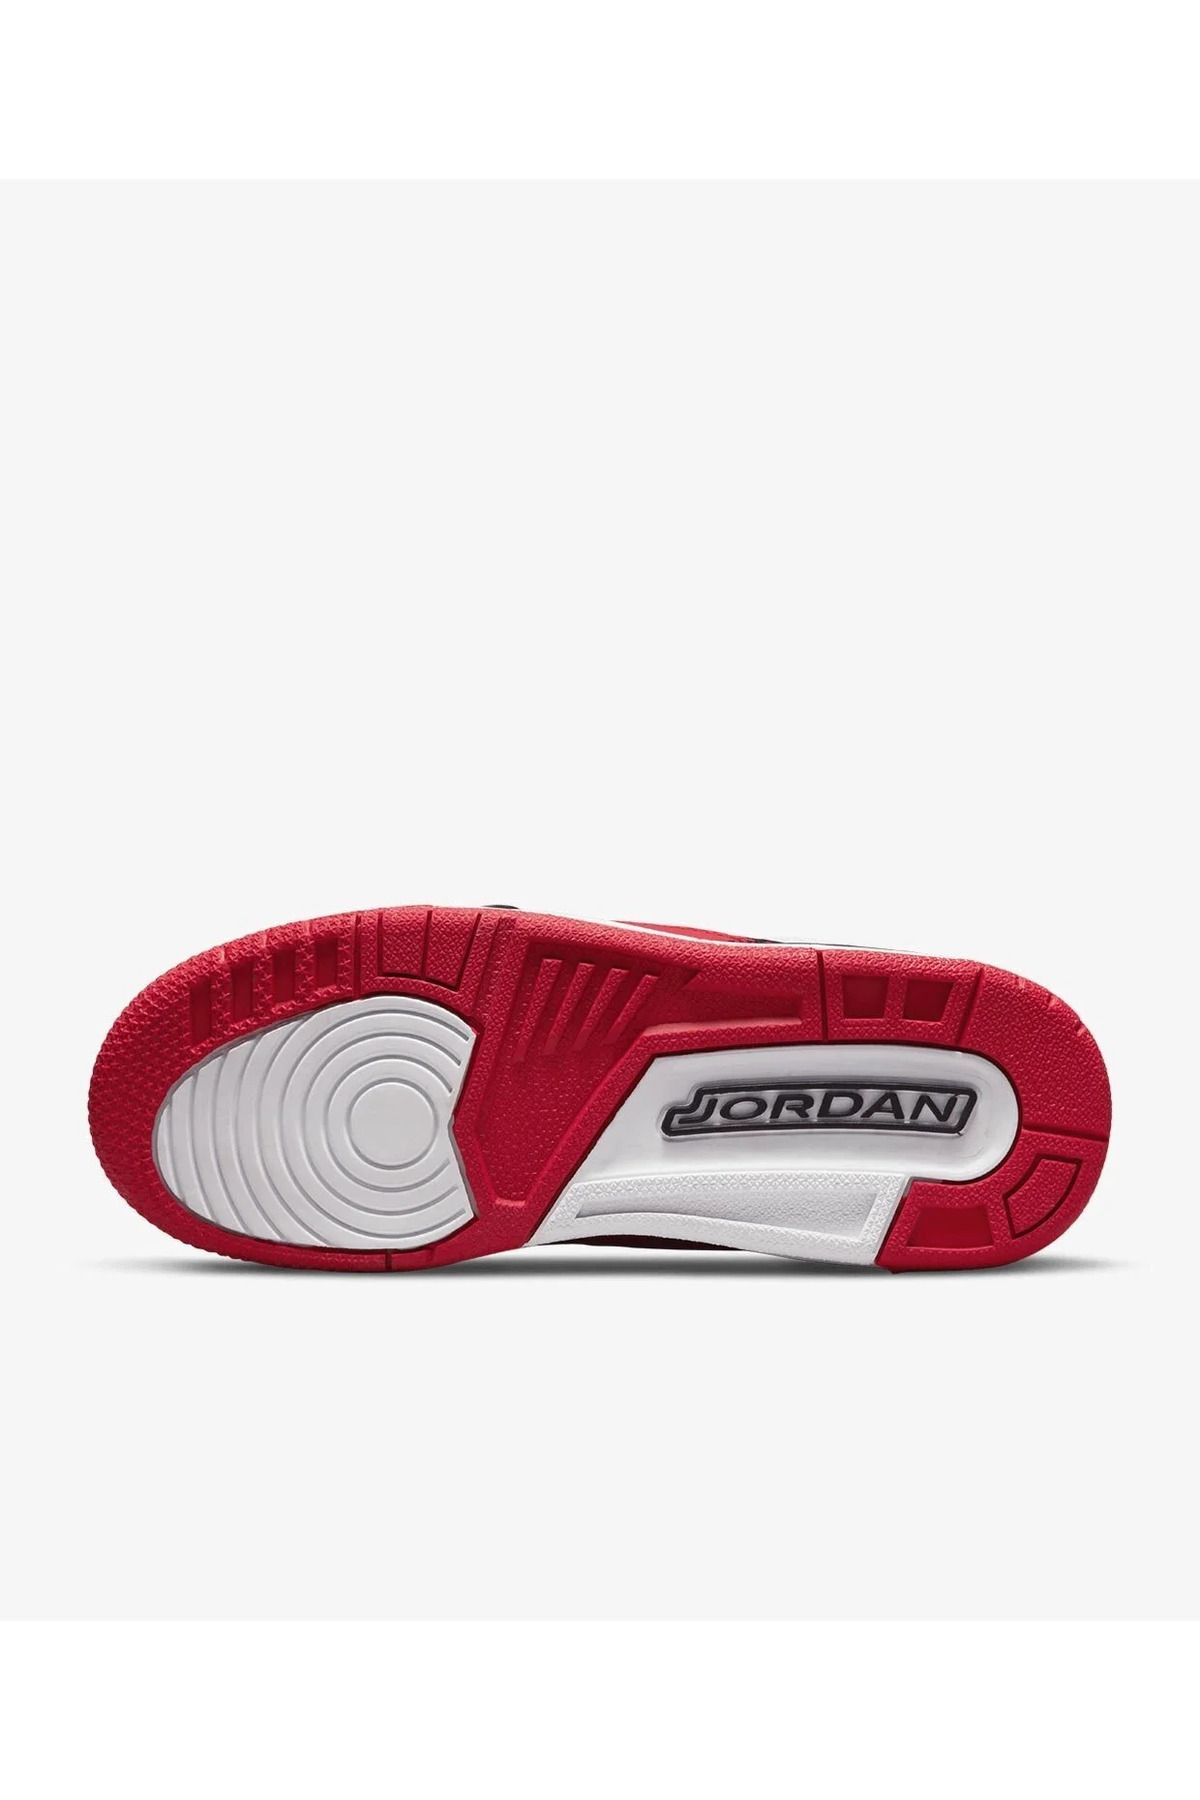 Nike Air Jordan Legacy 312 Low